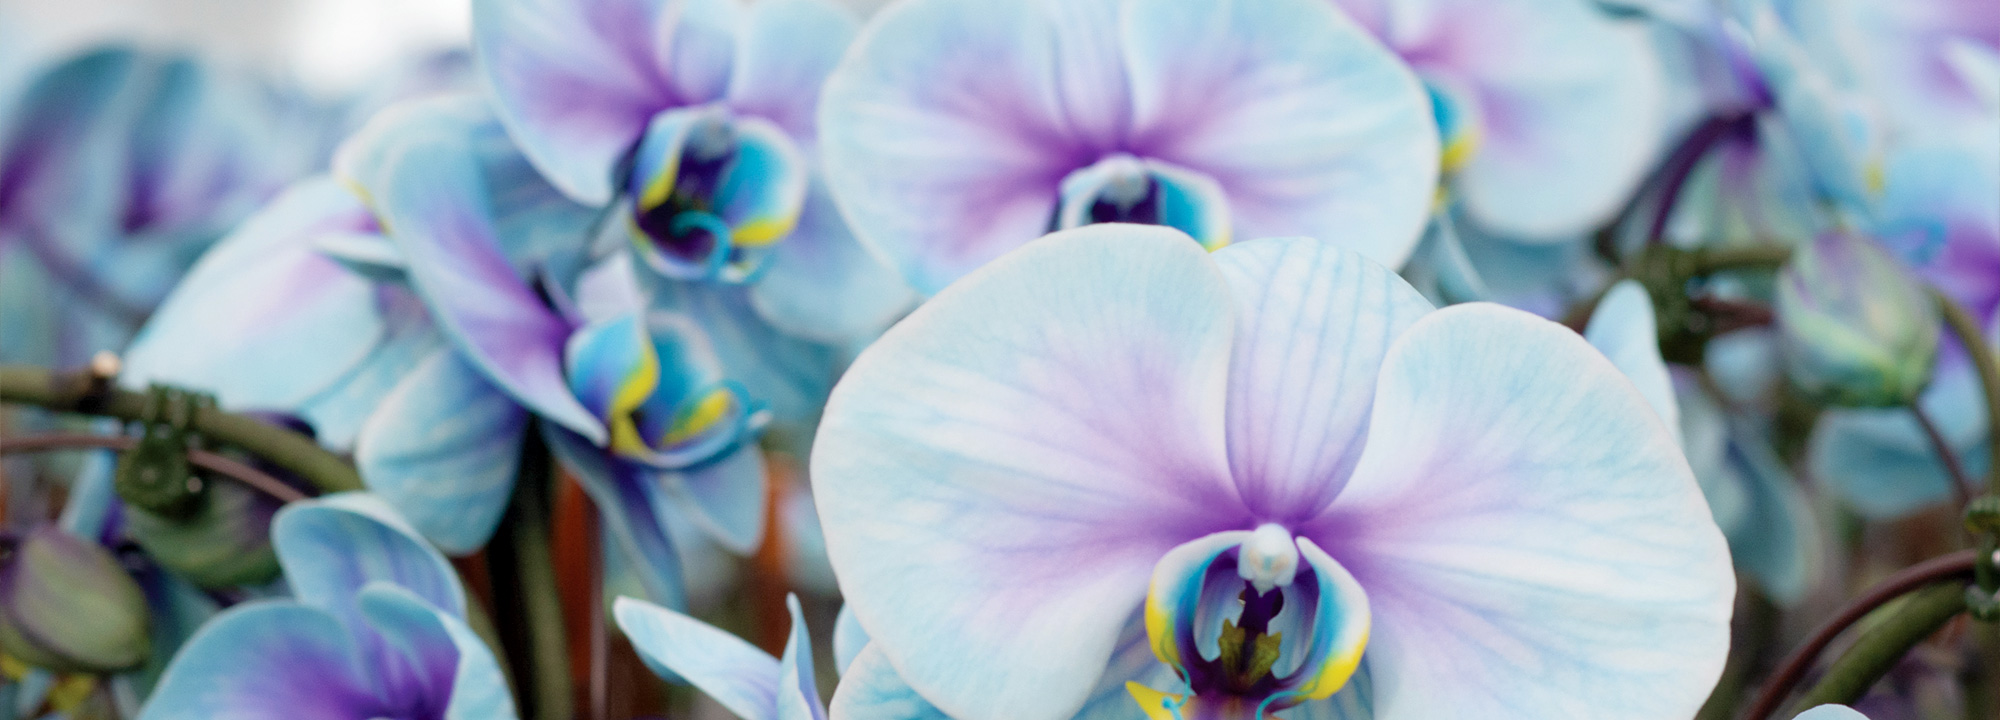 plainview-pure-premium-orchids